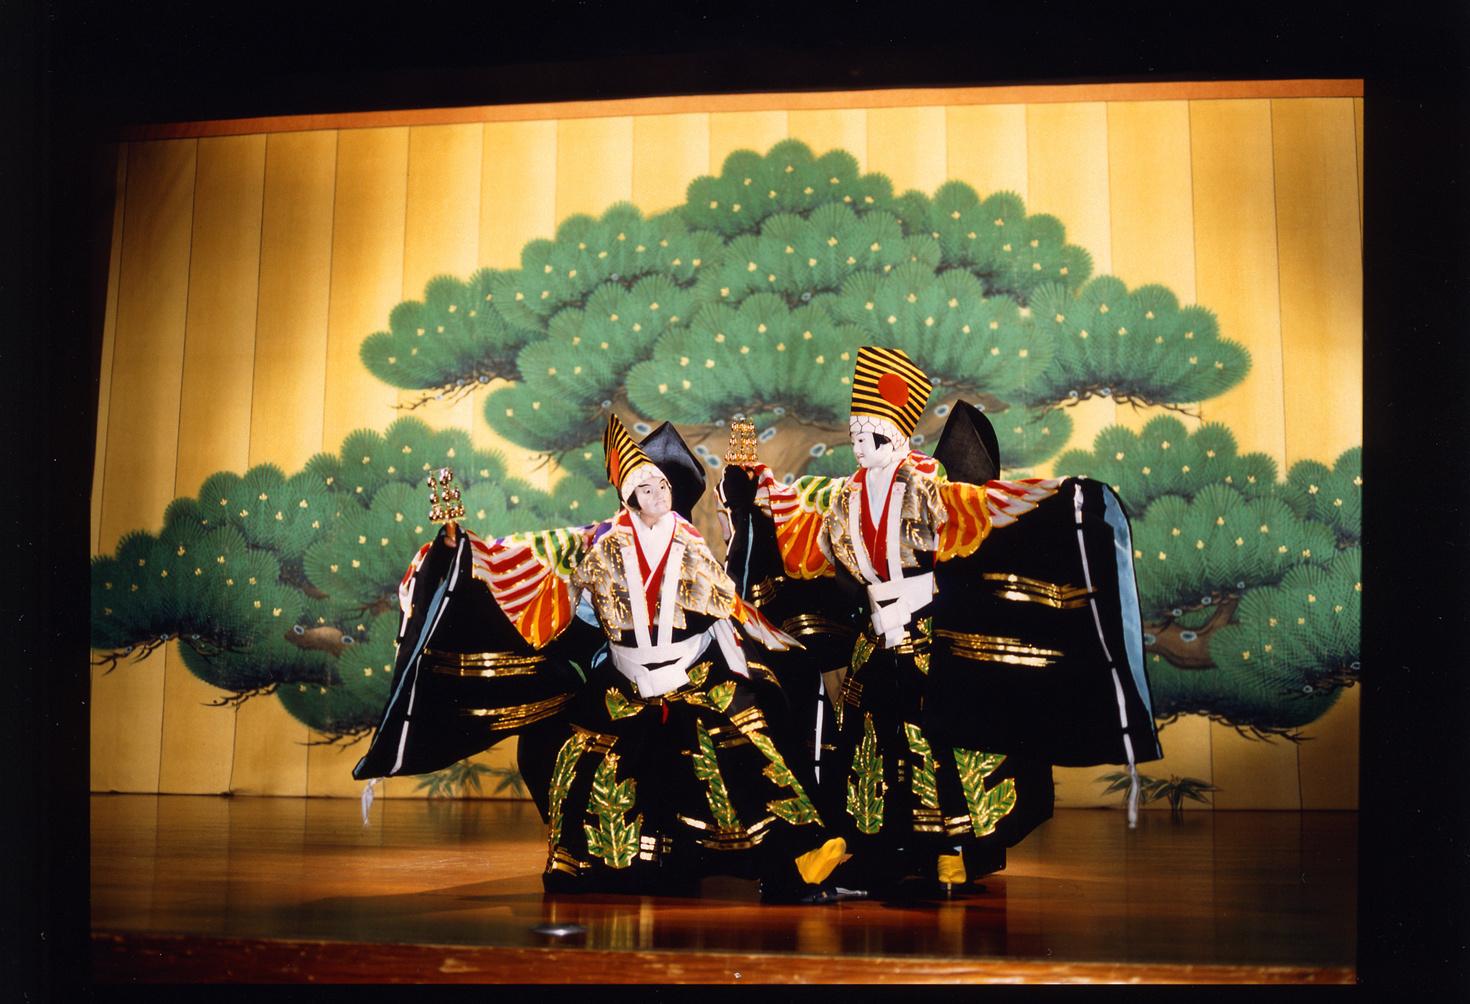 康樂及文化事務署六月呈獻西川古柳座《八王子車人形》偶戲。圖示《三番叟》劇照。
